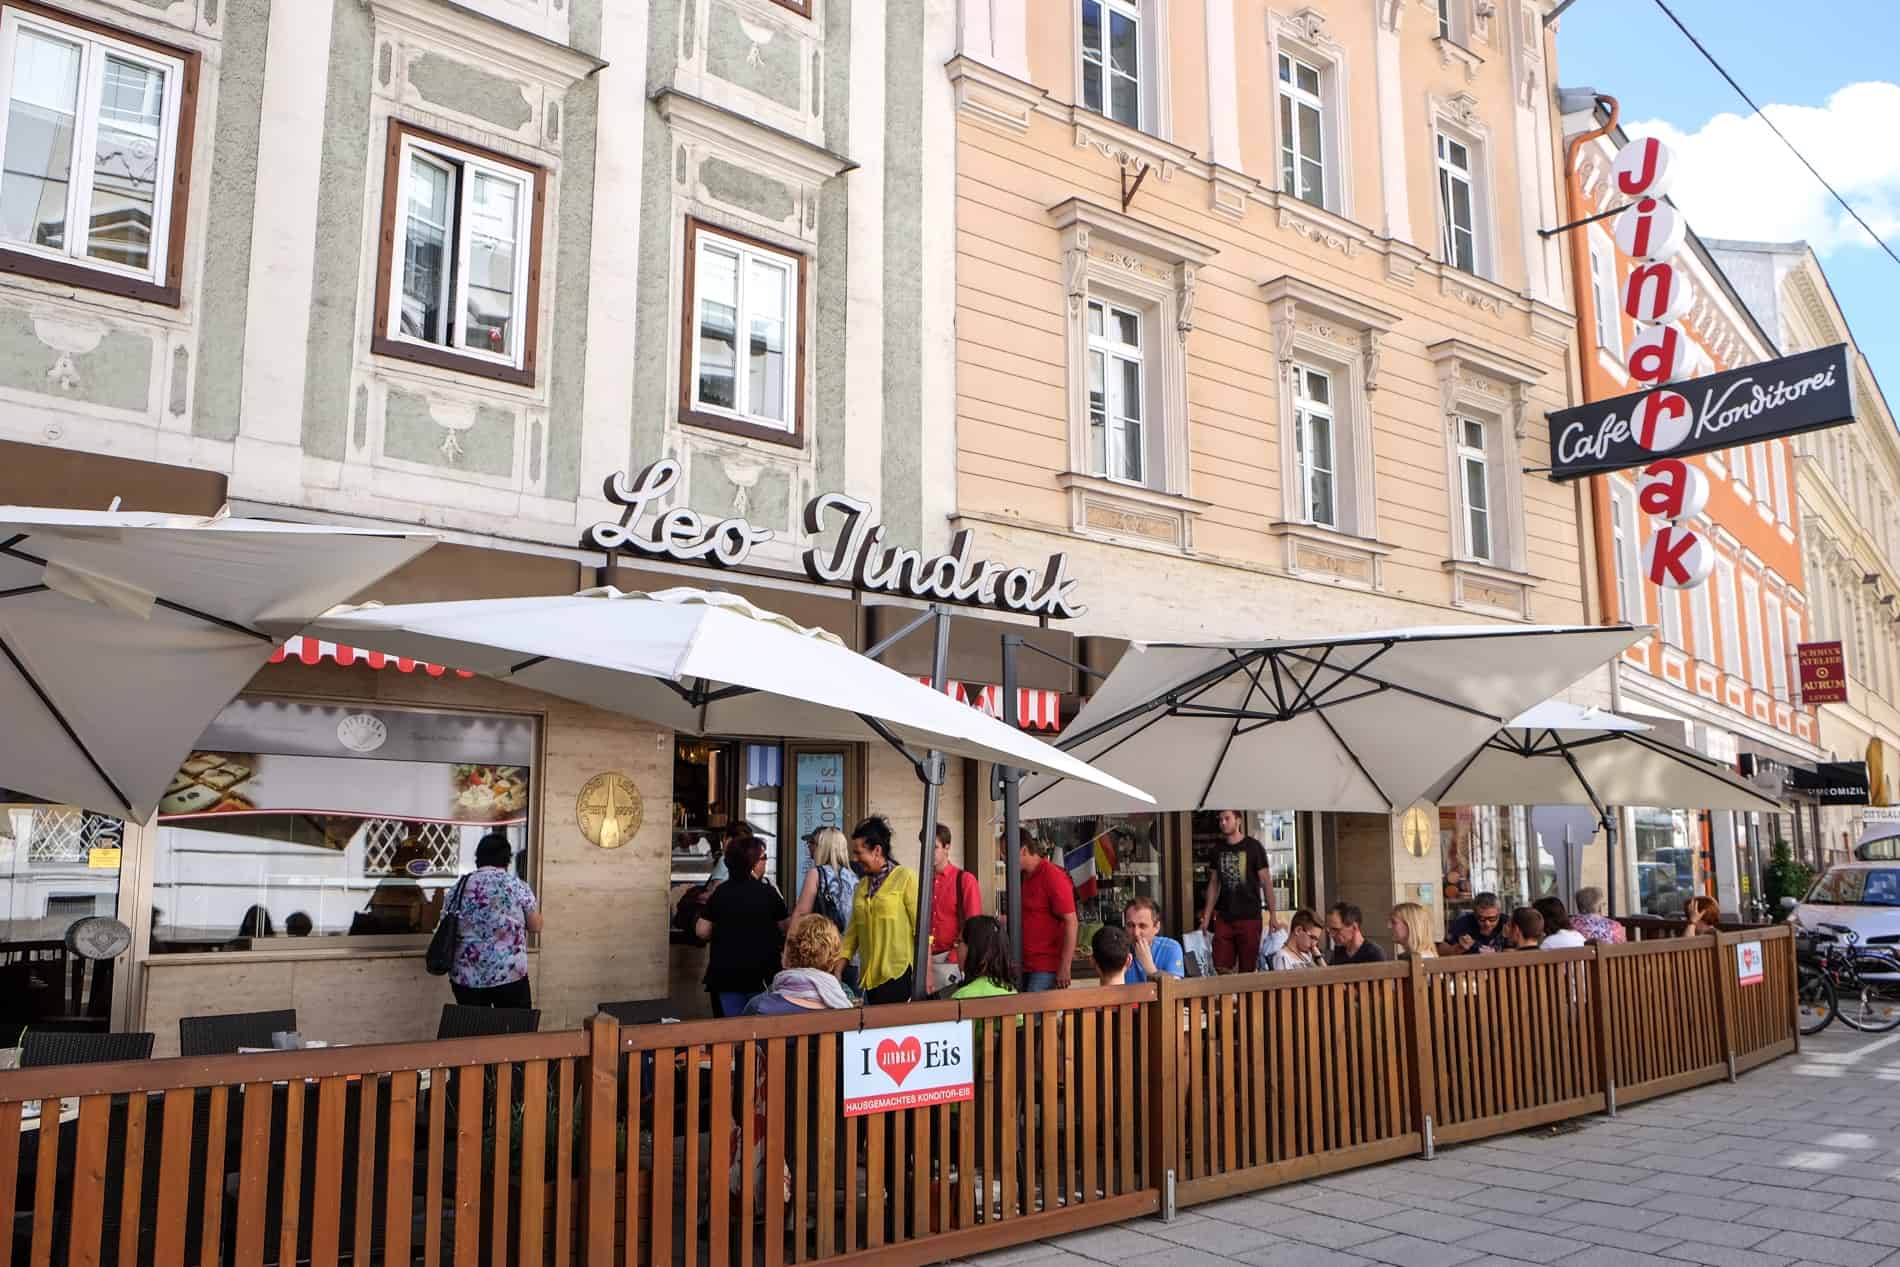 Al fresco cafe setup outside the Leo Jindrak café in Linz old town. 